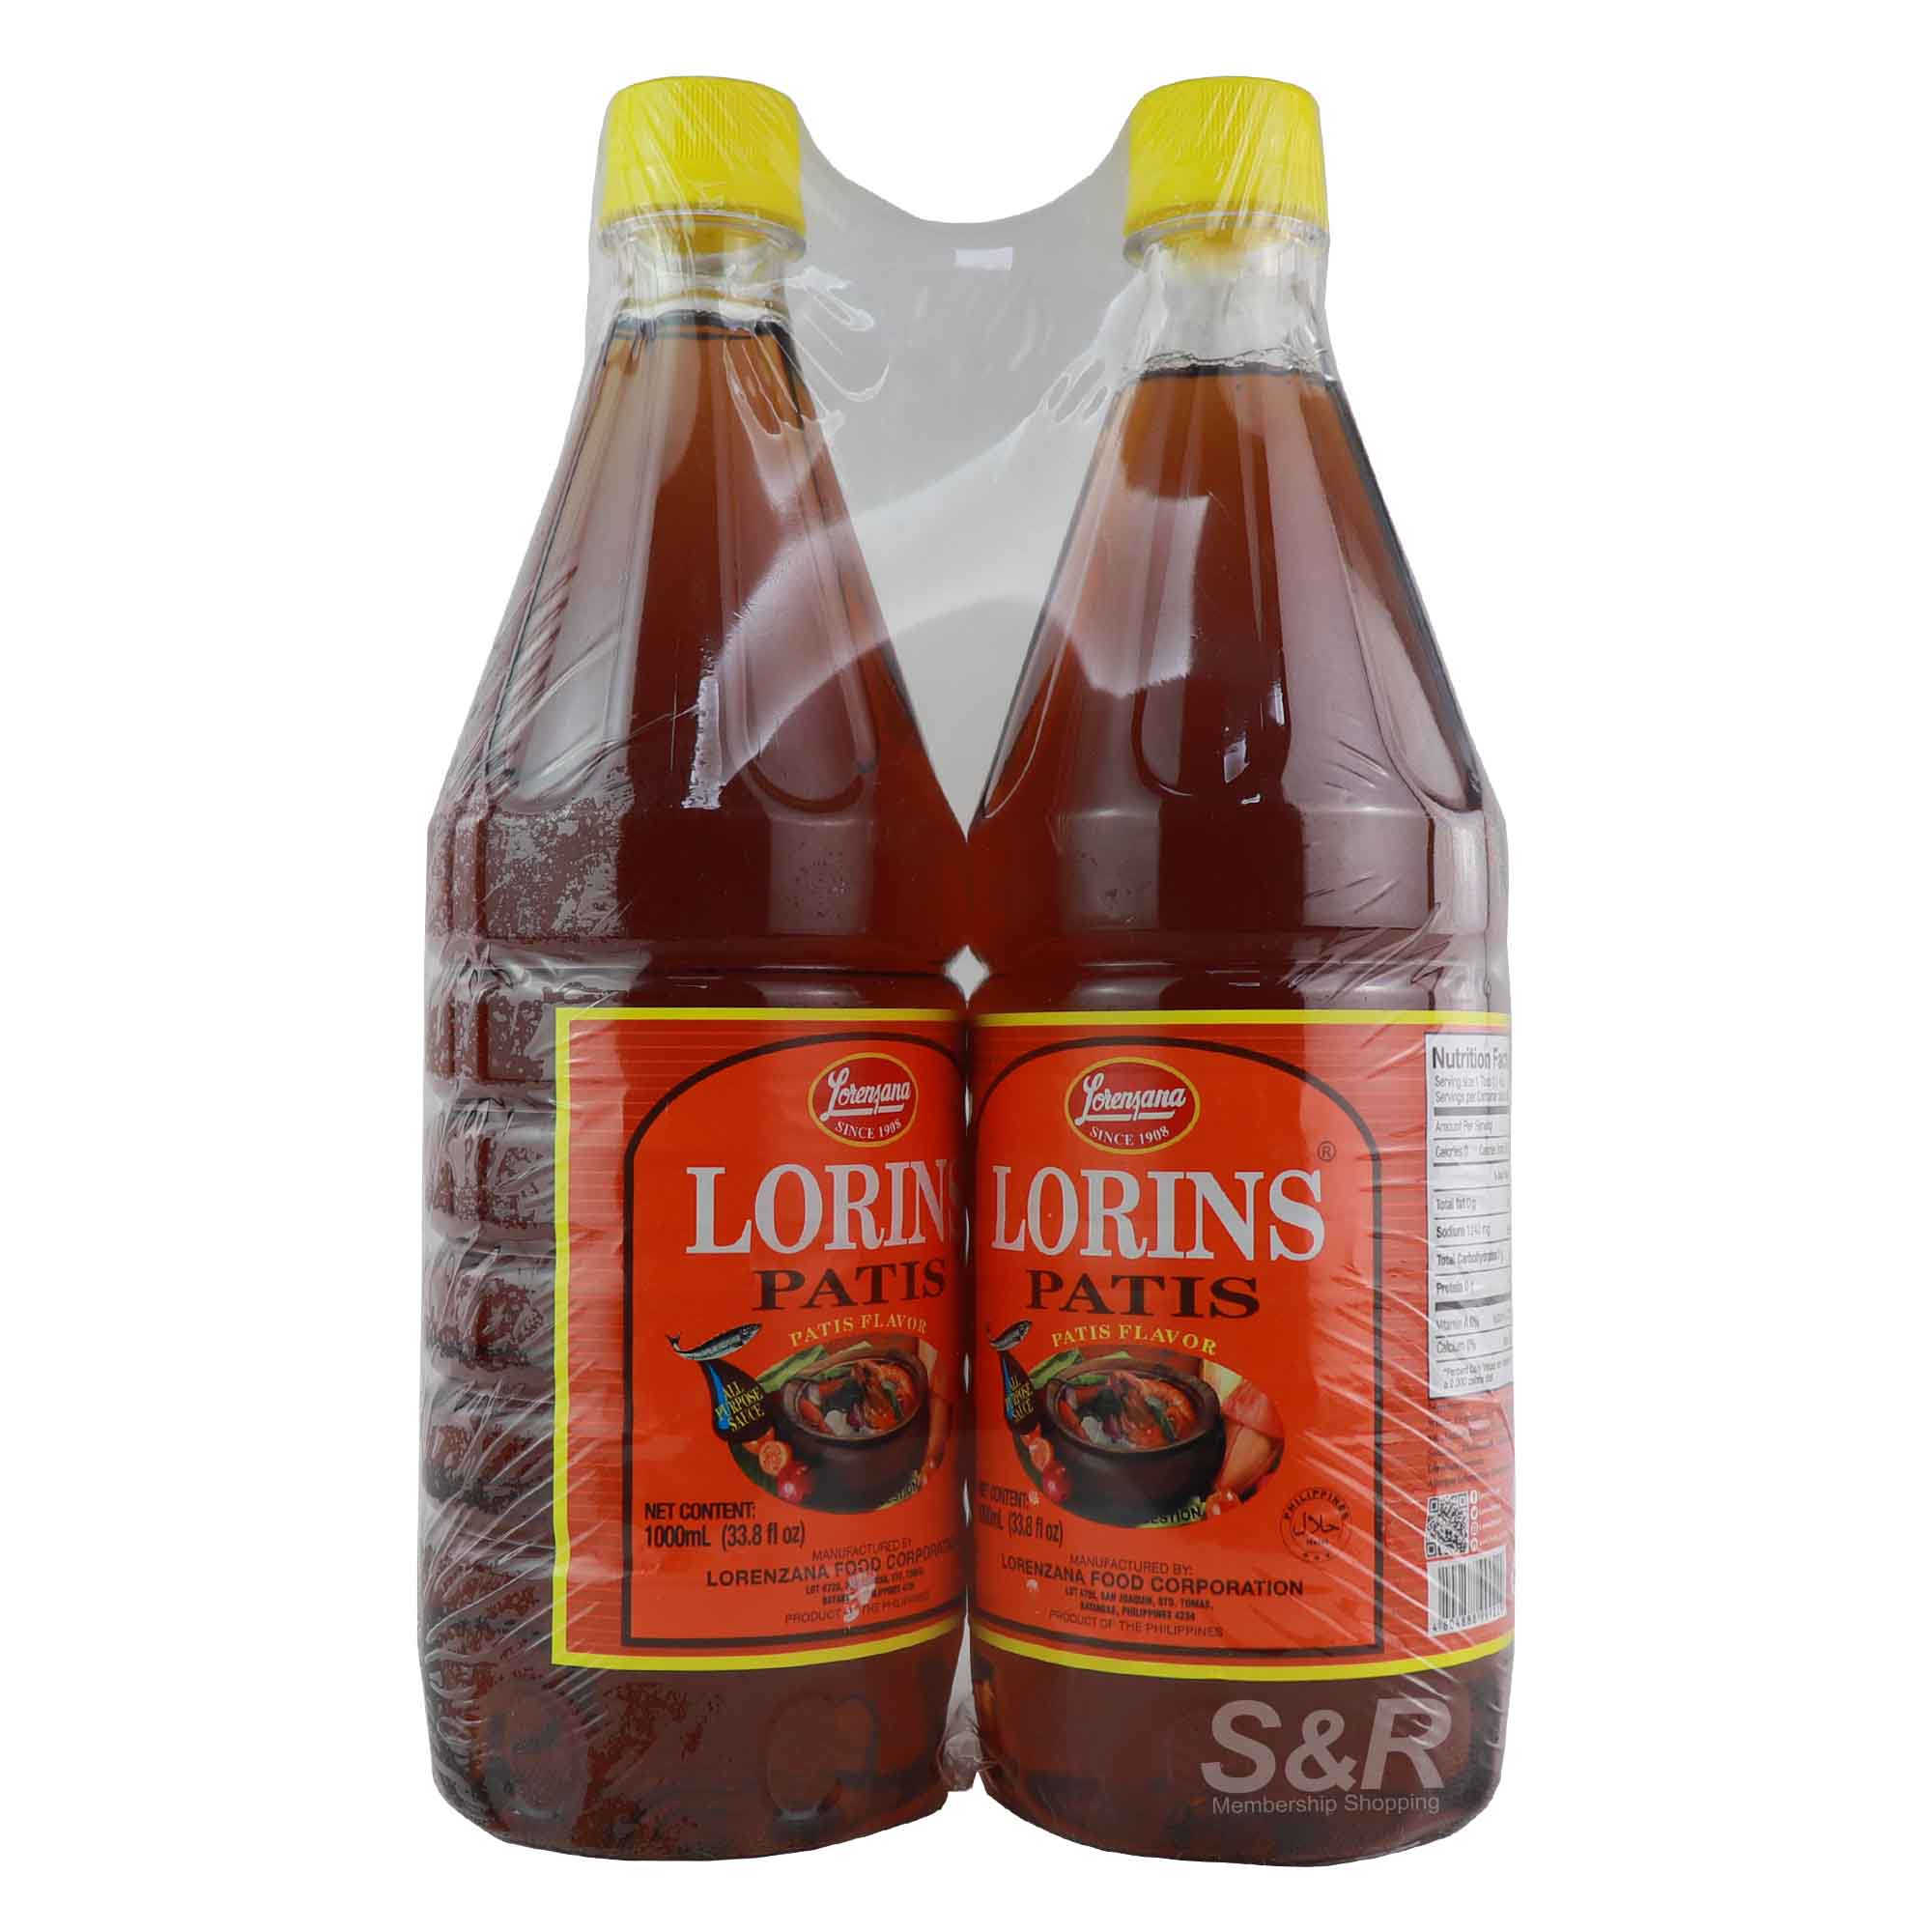 Lorenzana Lorins Patis All Purpose Sauce 2 bottles